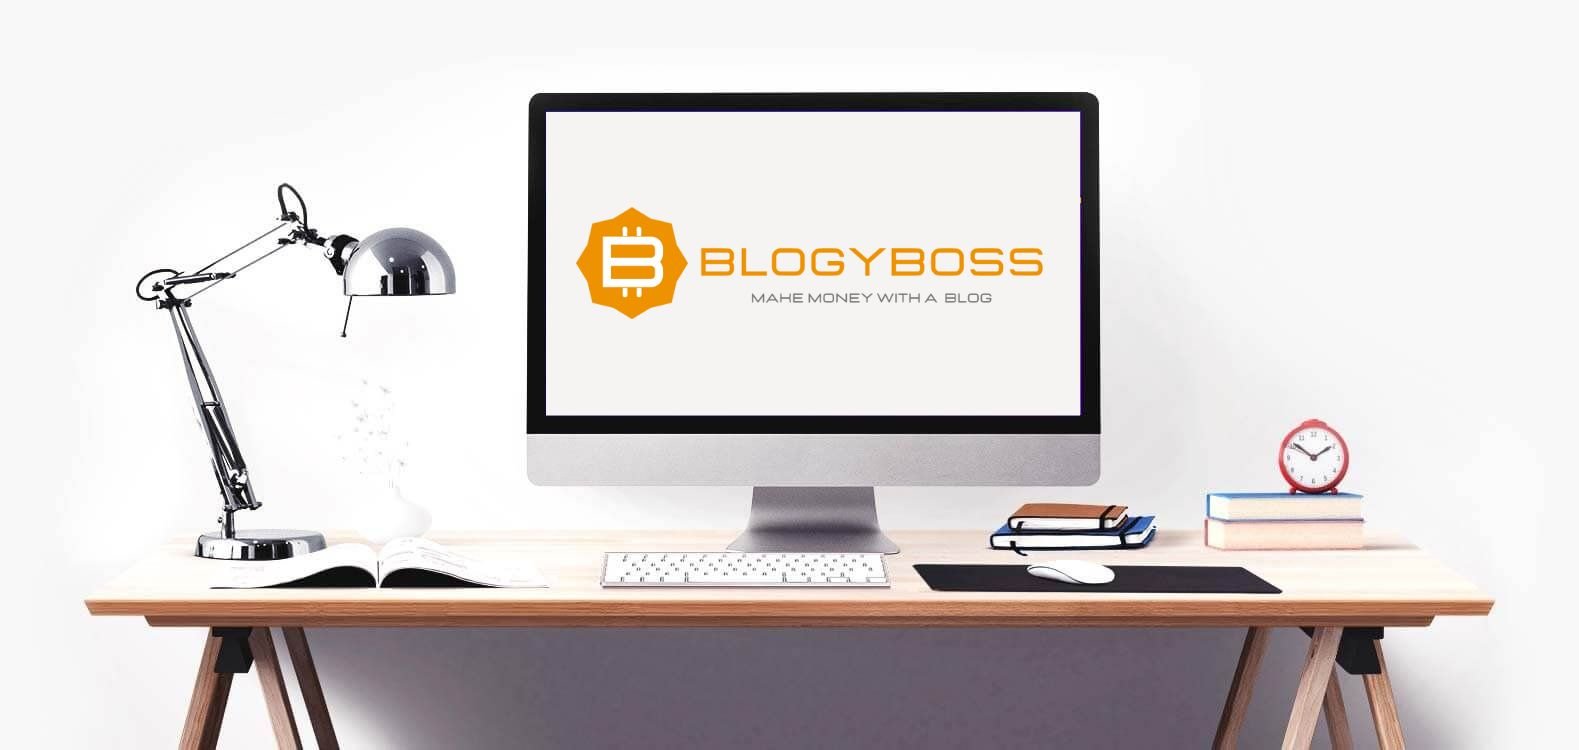 blogyboss crea il tuo blog profittevole